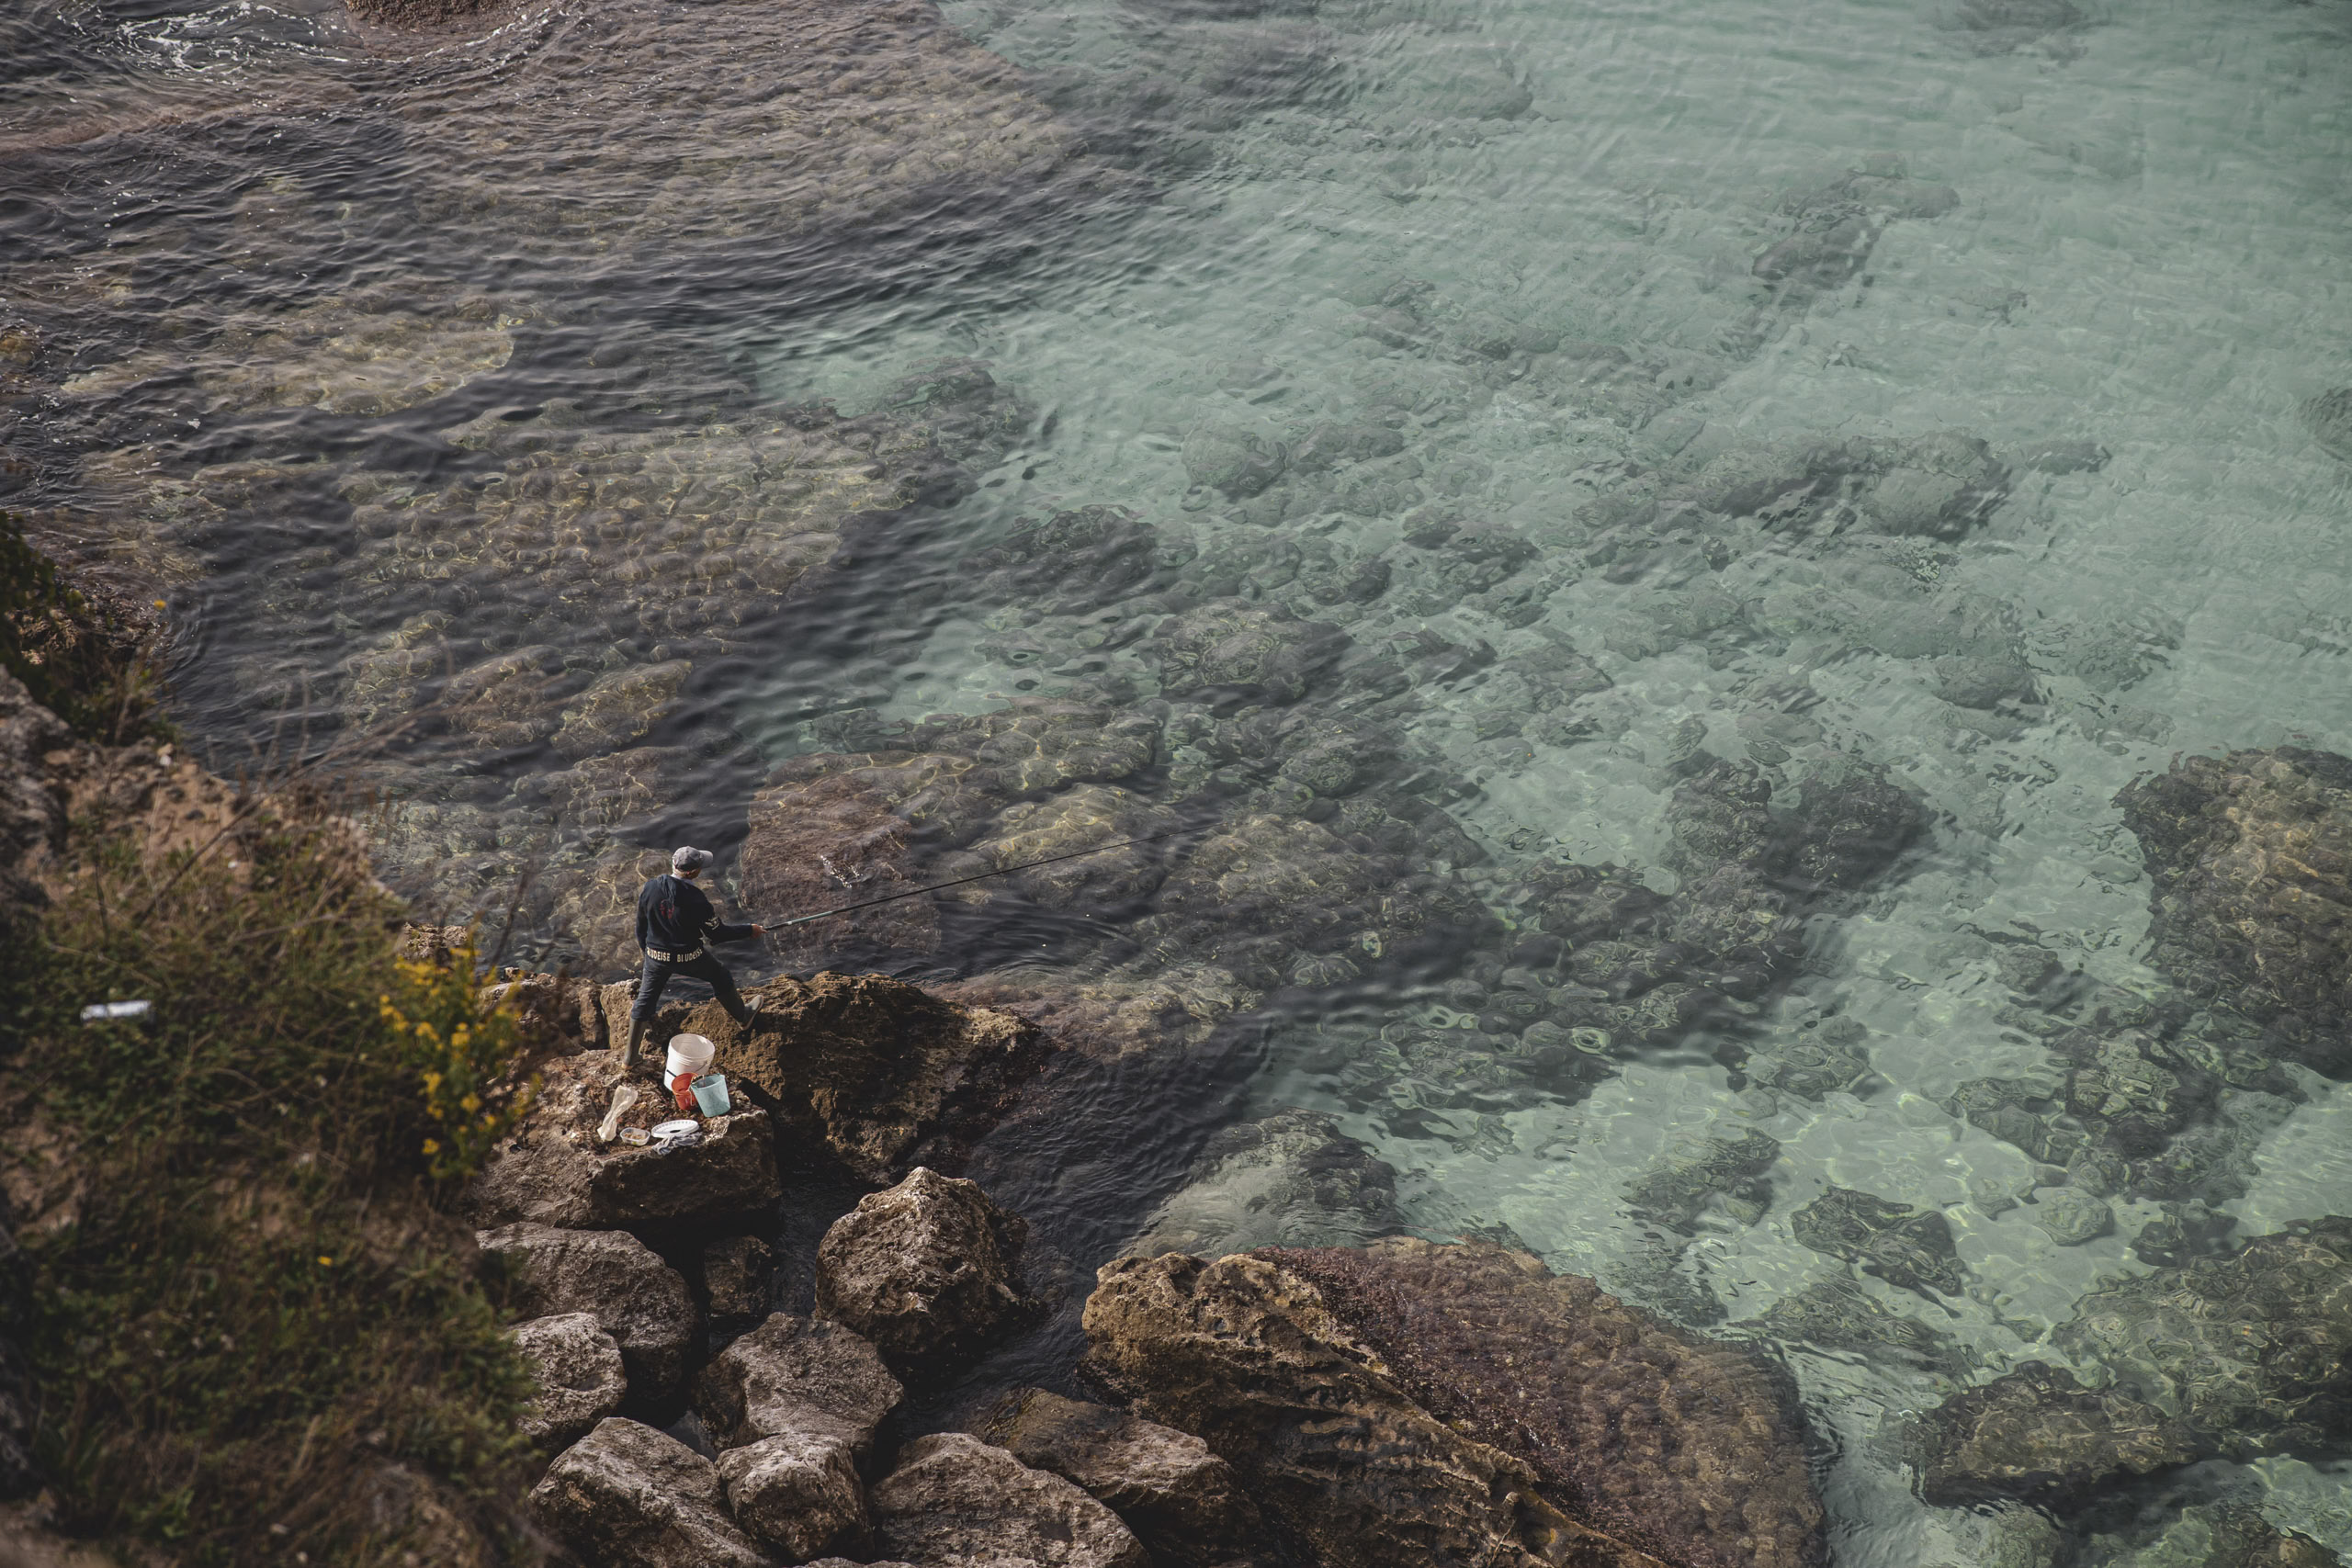 Zwei Personen angeln vor einer felsigen Küste. Eine Person sitzt, die andere steht. Das klare, türkisfarbene Wasser gibt den Blick auf untergetauchte Felsen und sanfte Wellen frei. © Fotografie Tomas Rodriguez